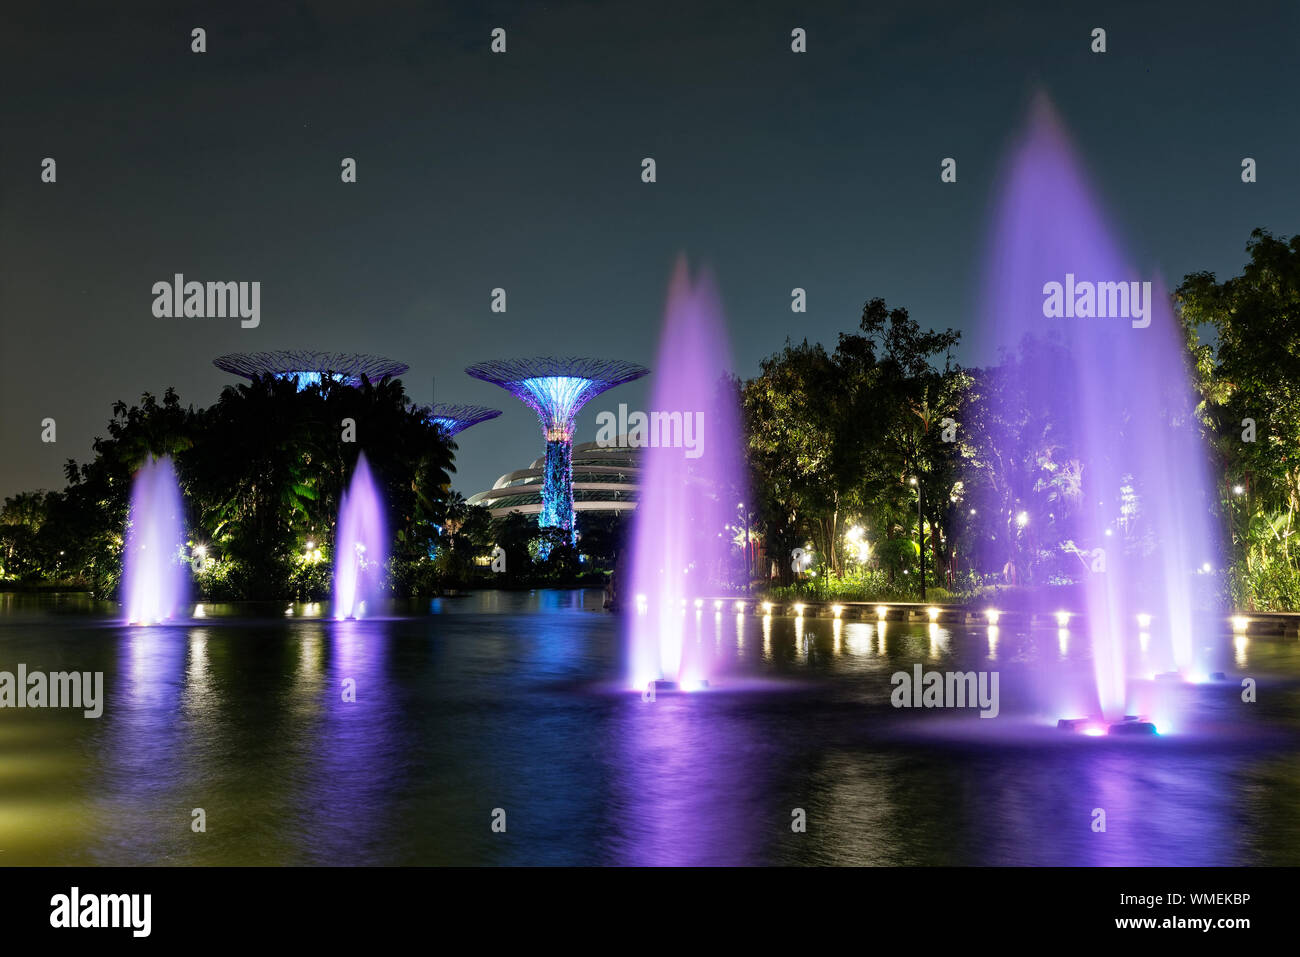 Landschaft in der Nacht - Singapur und Gärten durch die Bucht, bunte Lichter, Wasser und das Hotel in der Form eines Bootes. Stockfoto